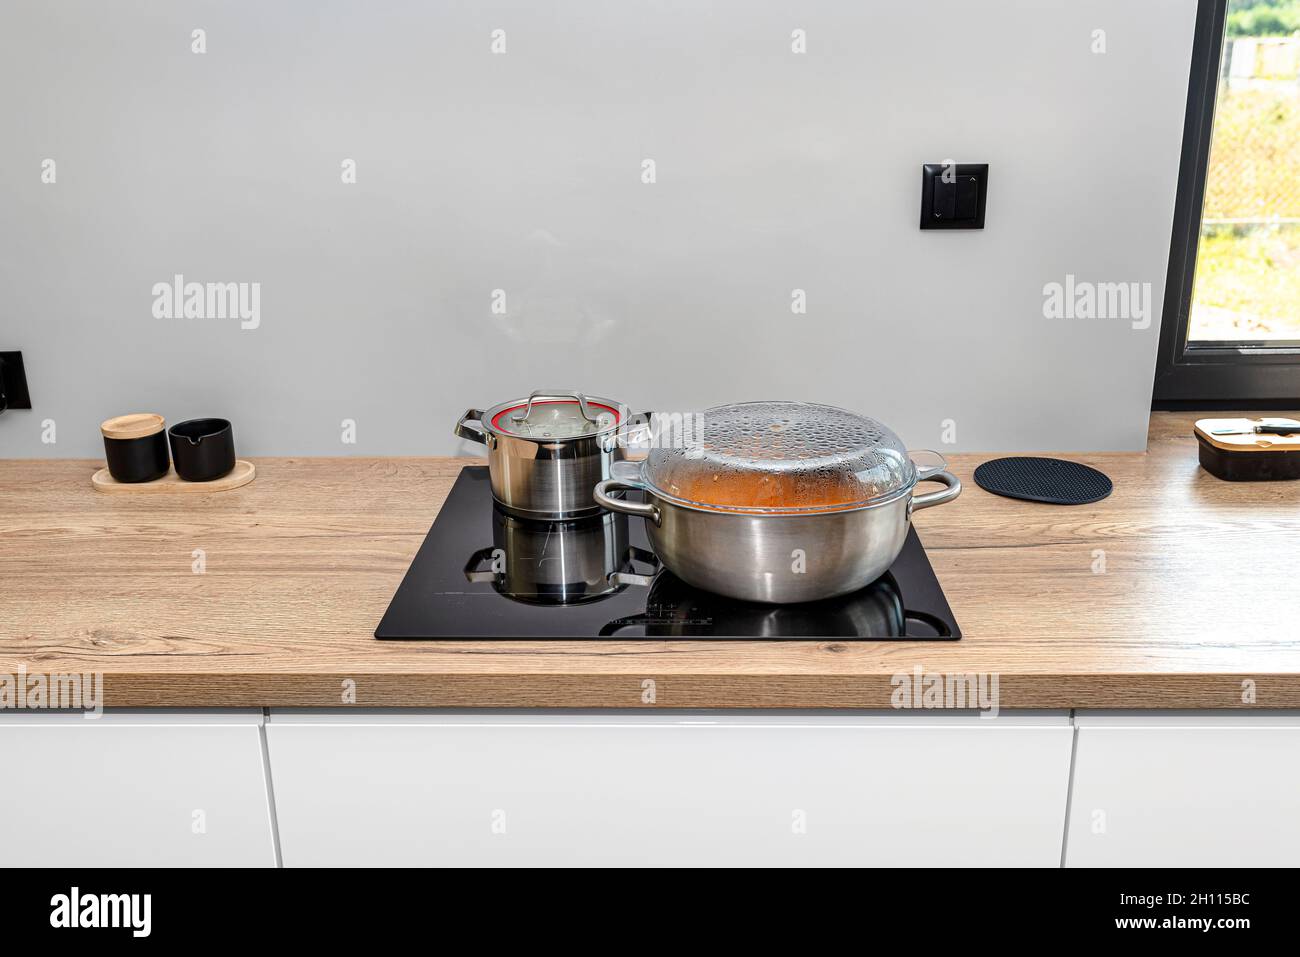 https://c8.alamy.com/compes/2h115bc/ollas-de-acero-con-un-plato-de-cocina-en-una-cocina-de-induccion-integrada-en-la-encimera-de-la-cocina-en-los-armarios-2h115bc.jpg